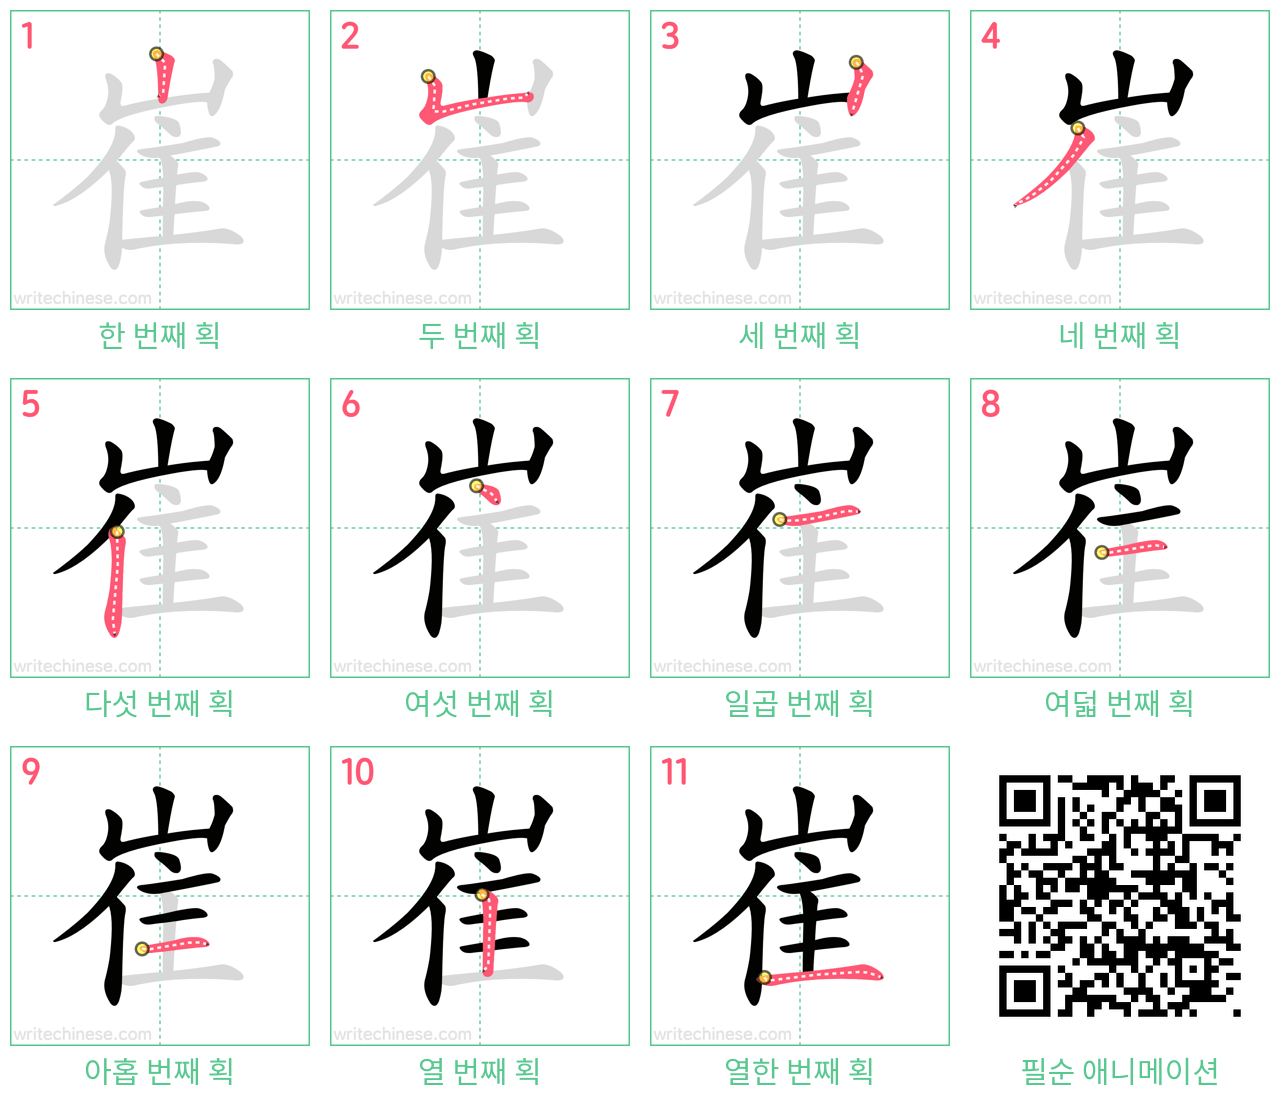 崔 step-by-step stroke order diagrams